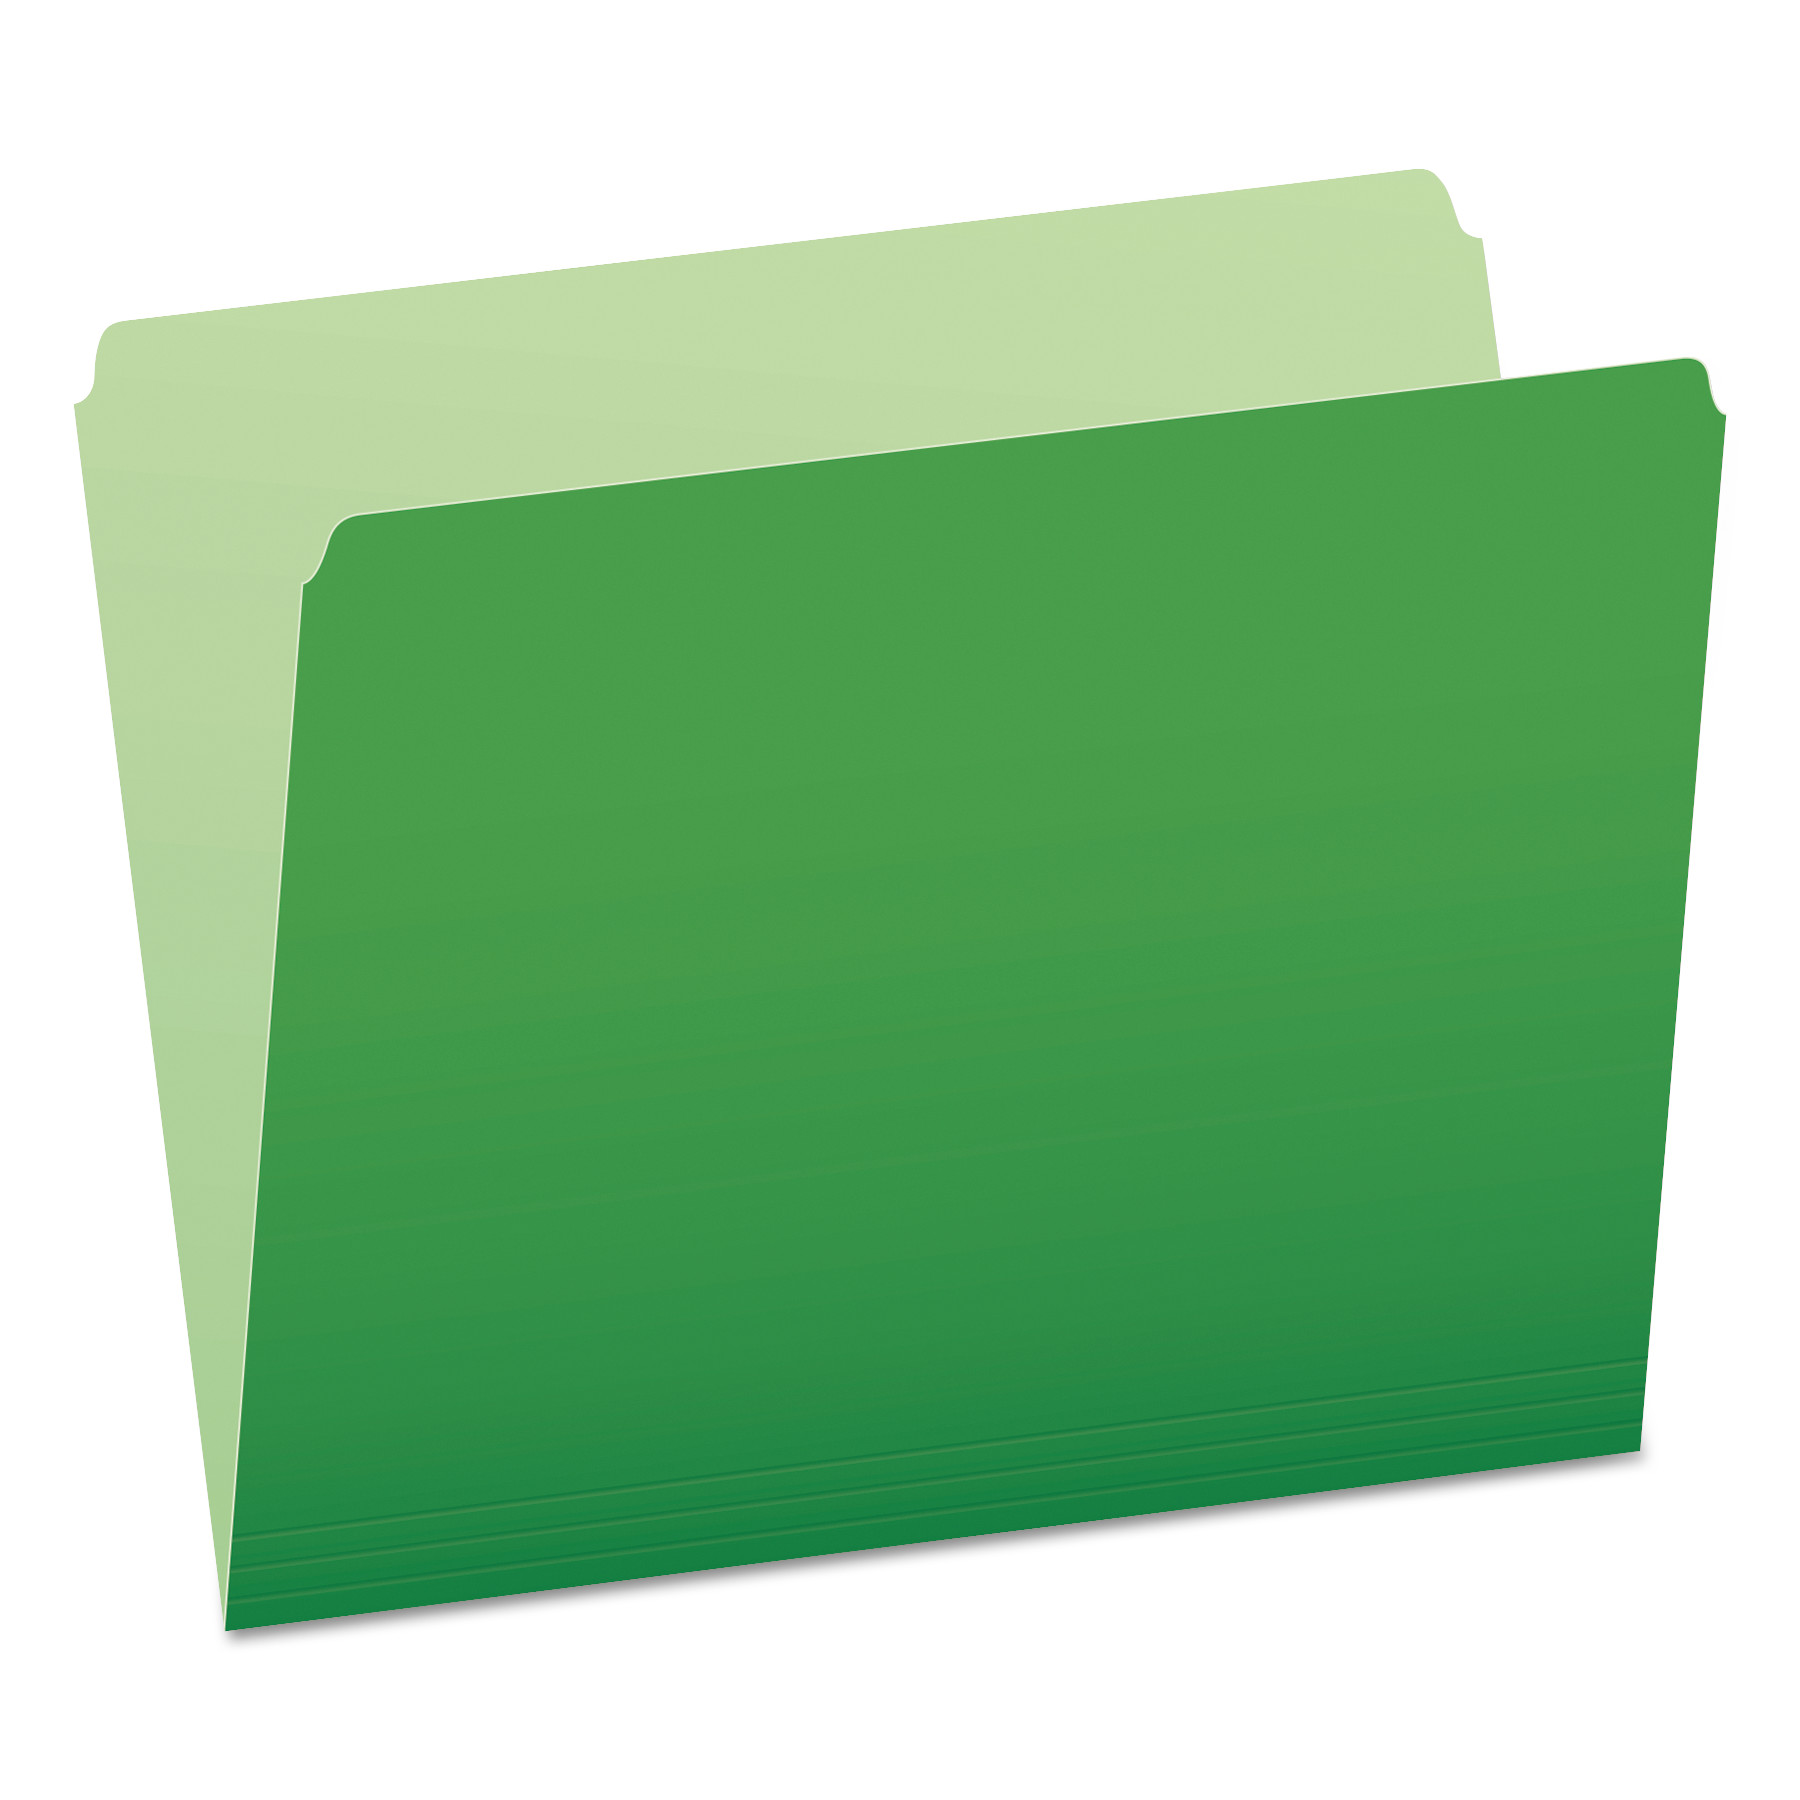  Pendaflex 152 BGR Colored File Folders, Straight Tab, Letter Size, Green/Light Green, 100/Box (PFX152BGR) 